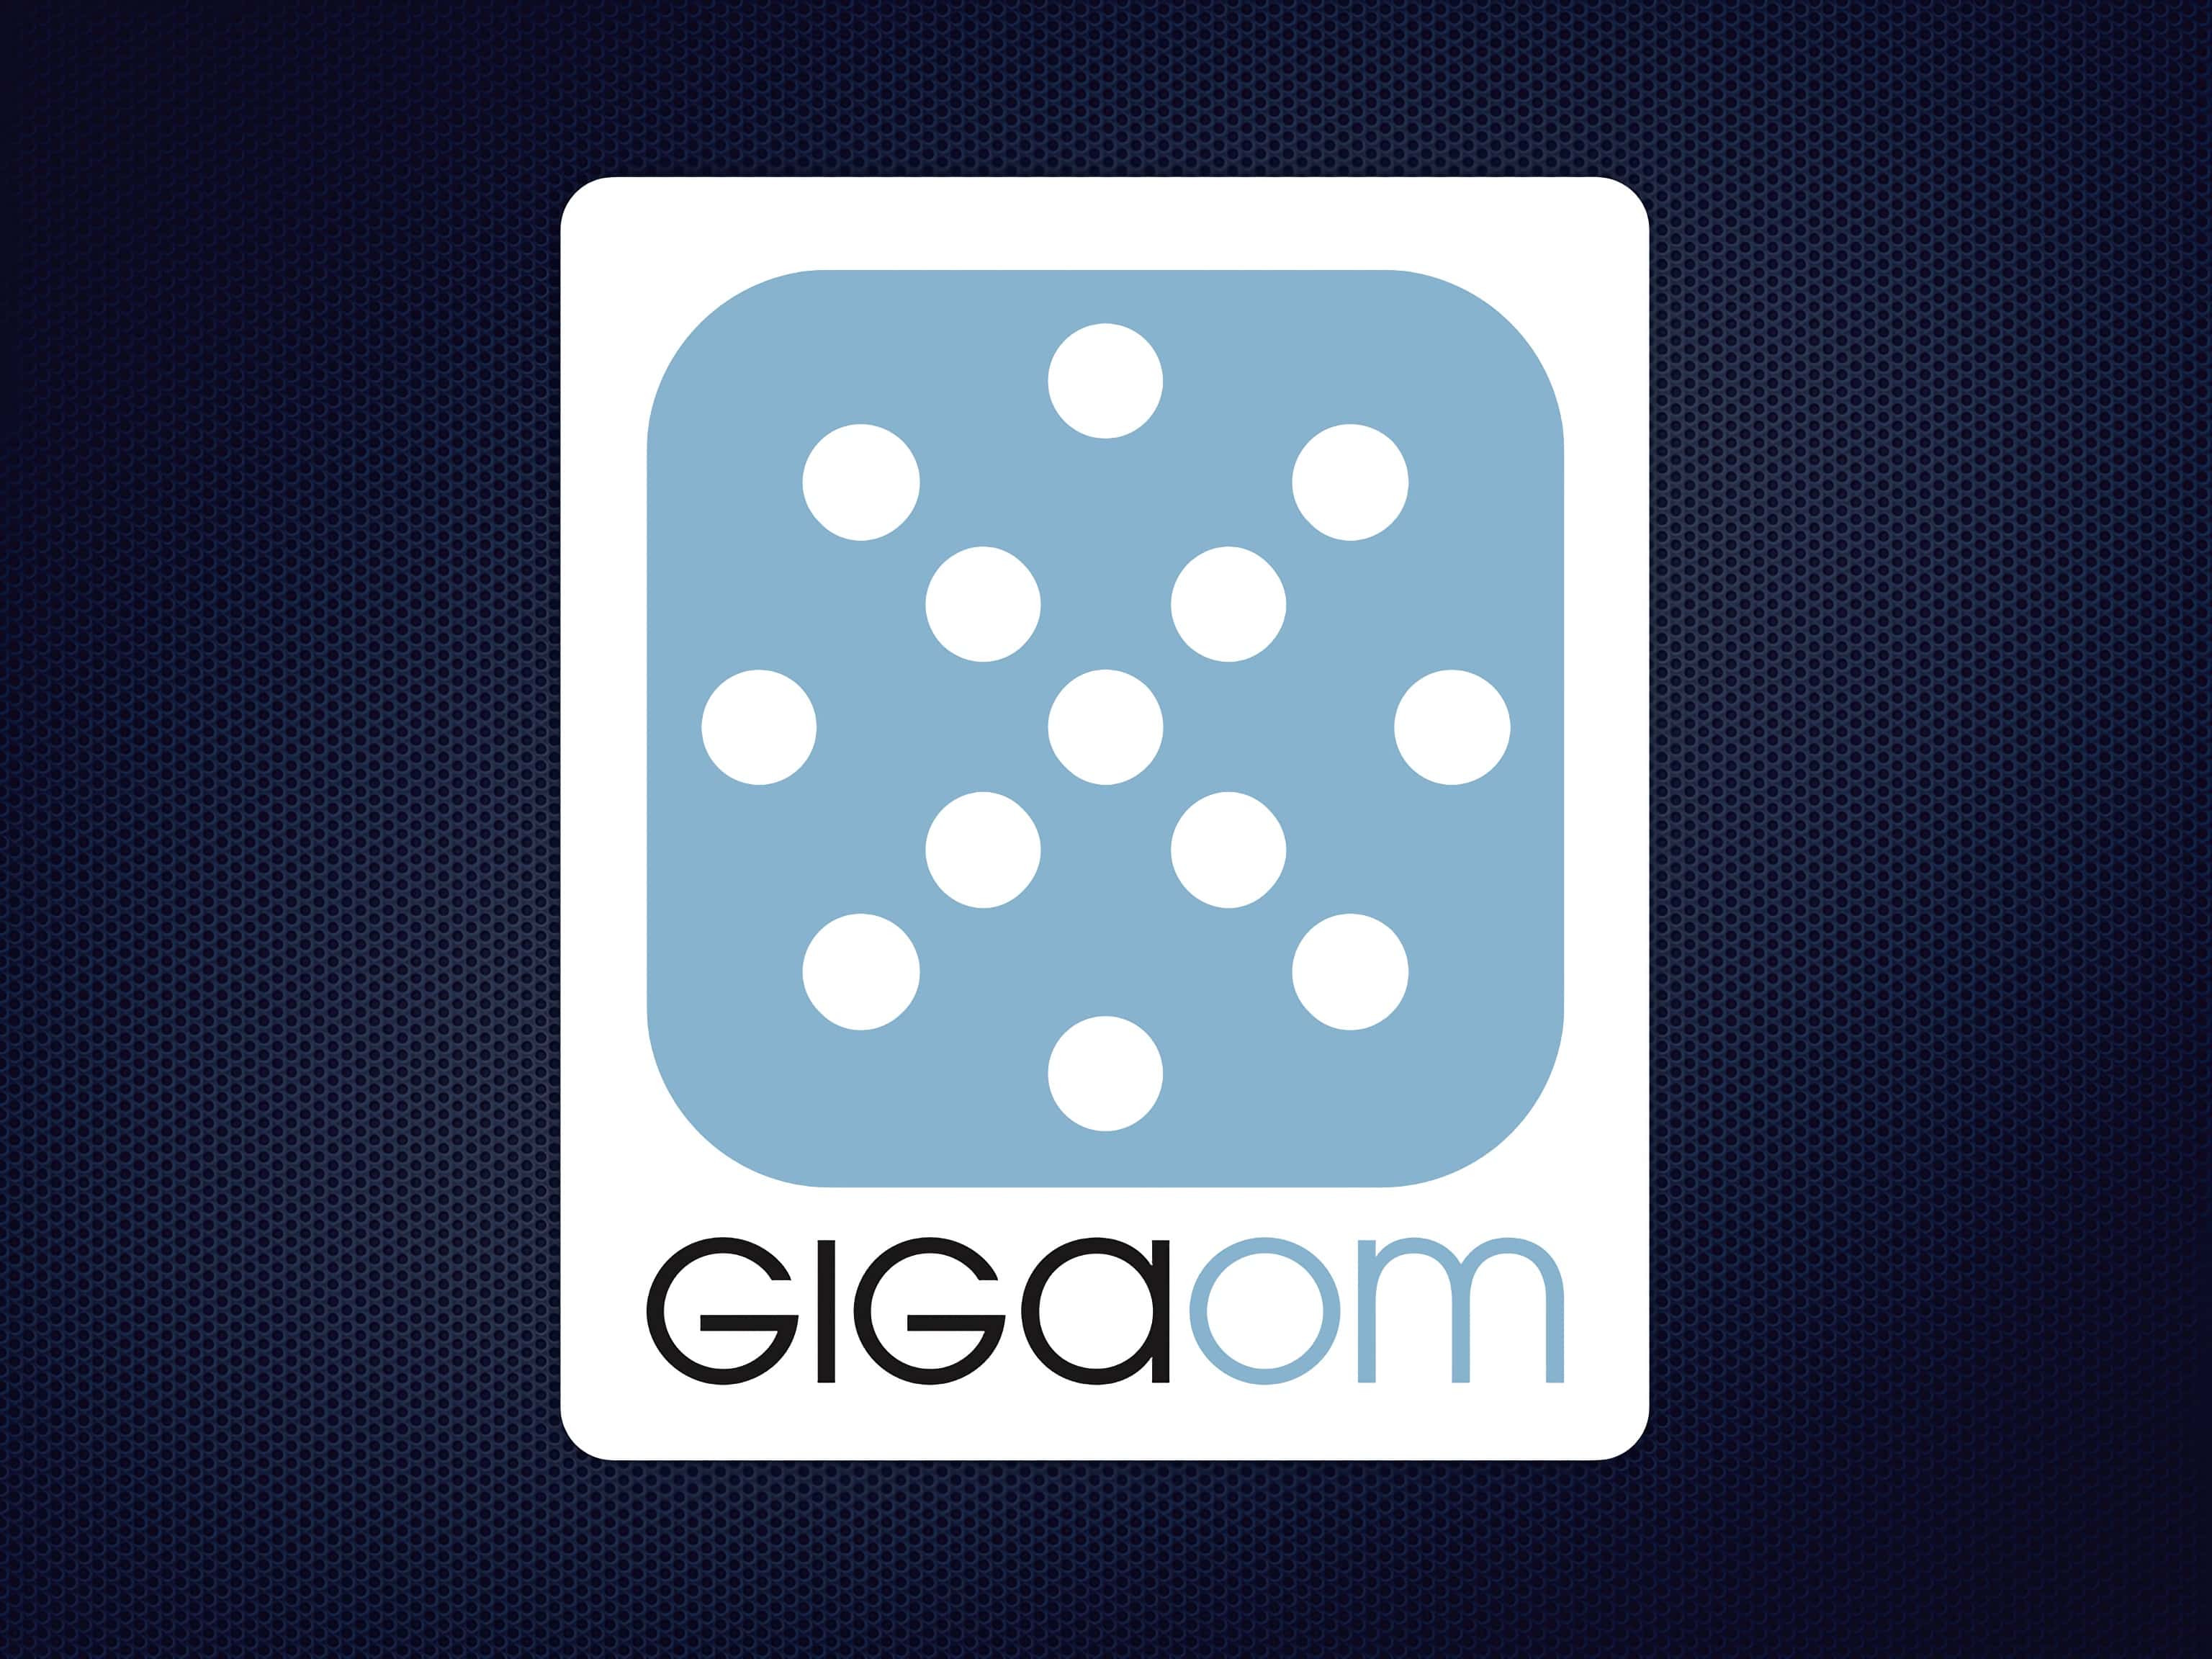 I work for GigaOM,